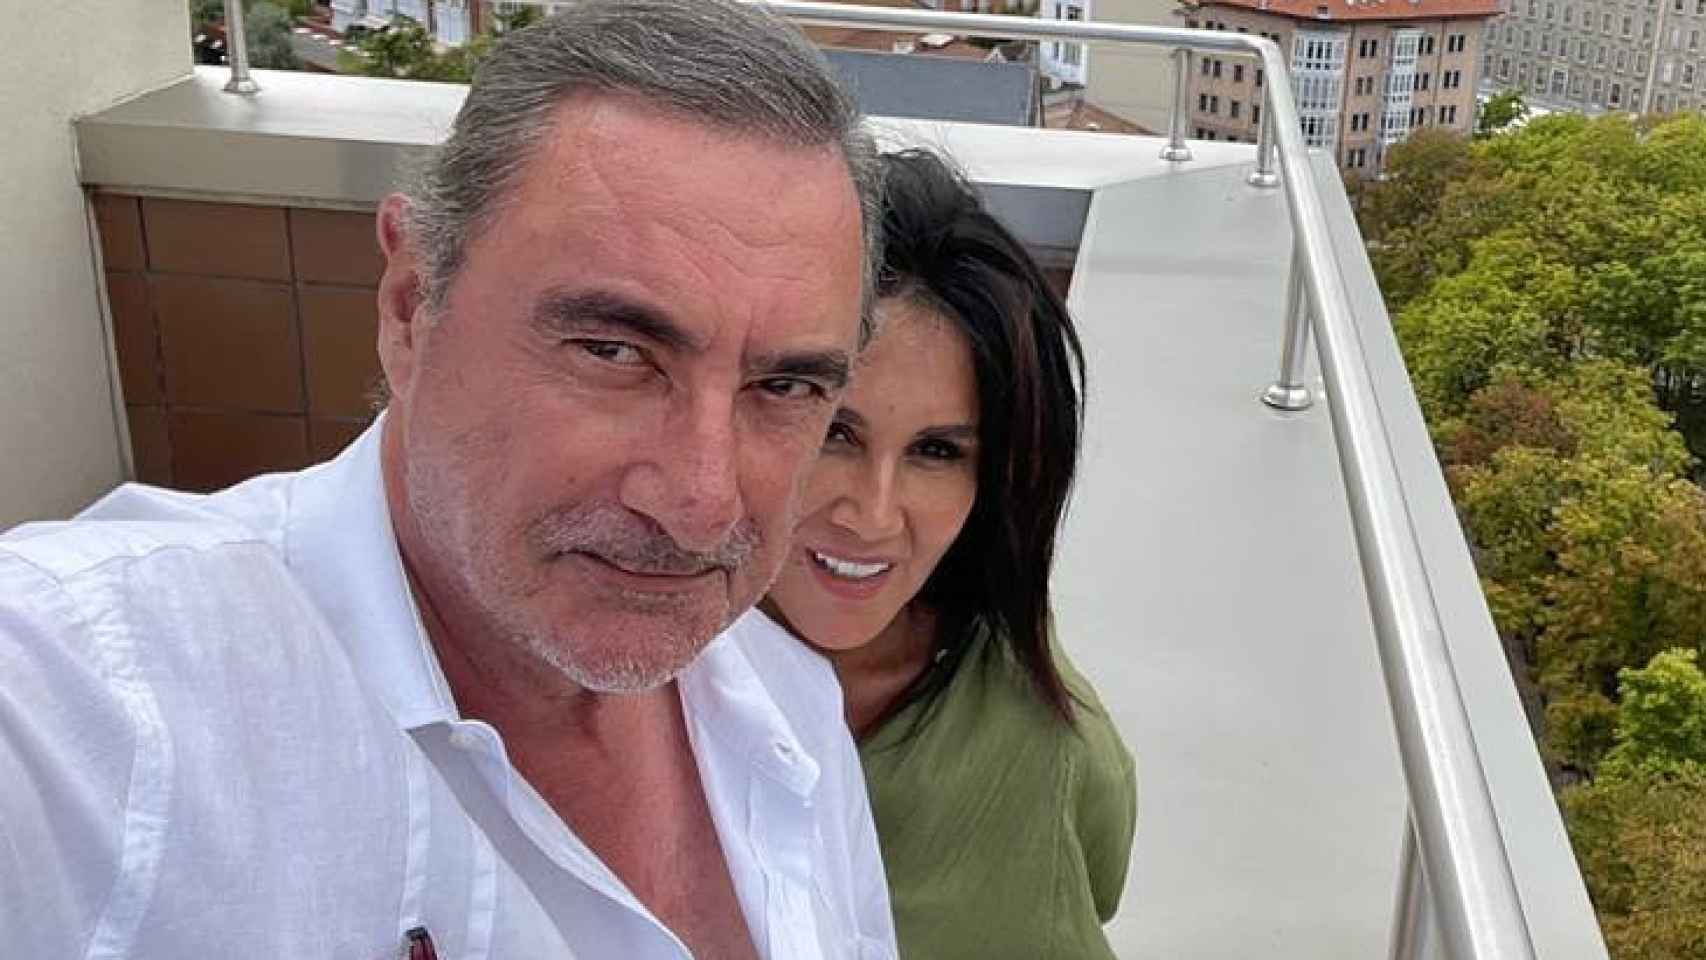 El periodista Carlos Herrera junto a su pareja sentimental, Pepa Gea, en una imagen reciente, tomada este pasado mes de agosto.